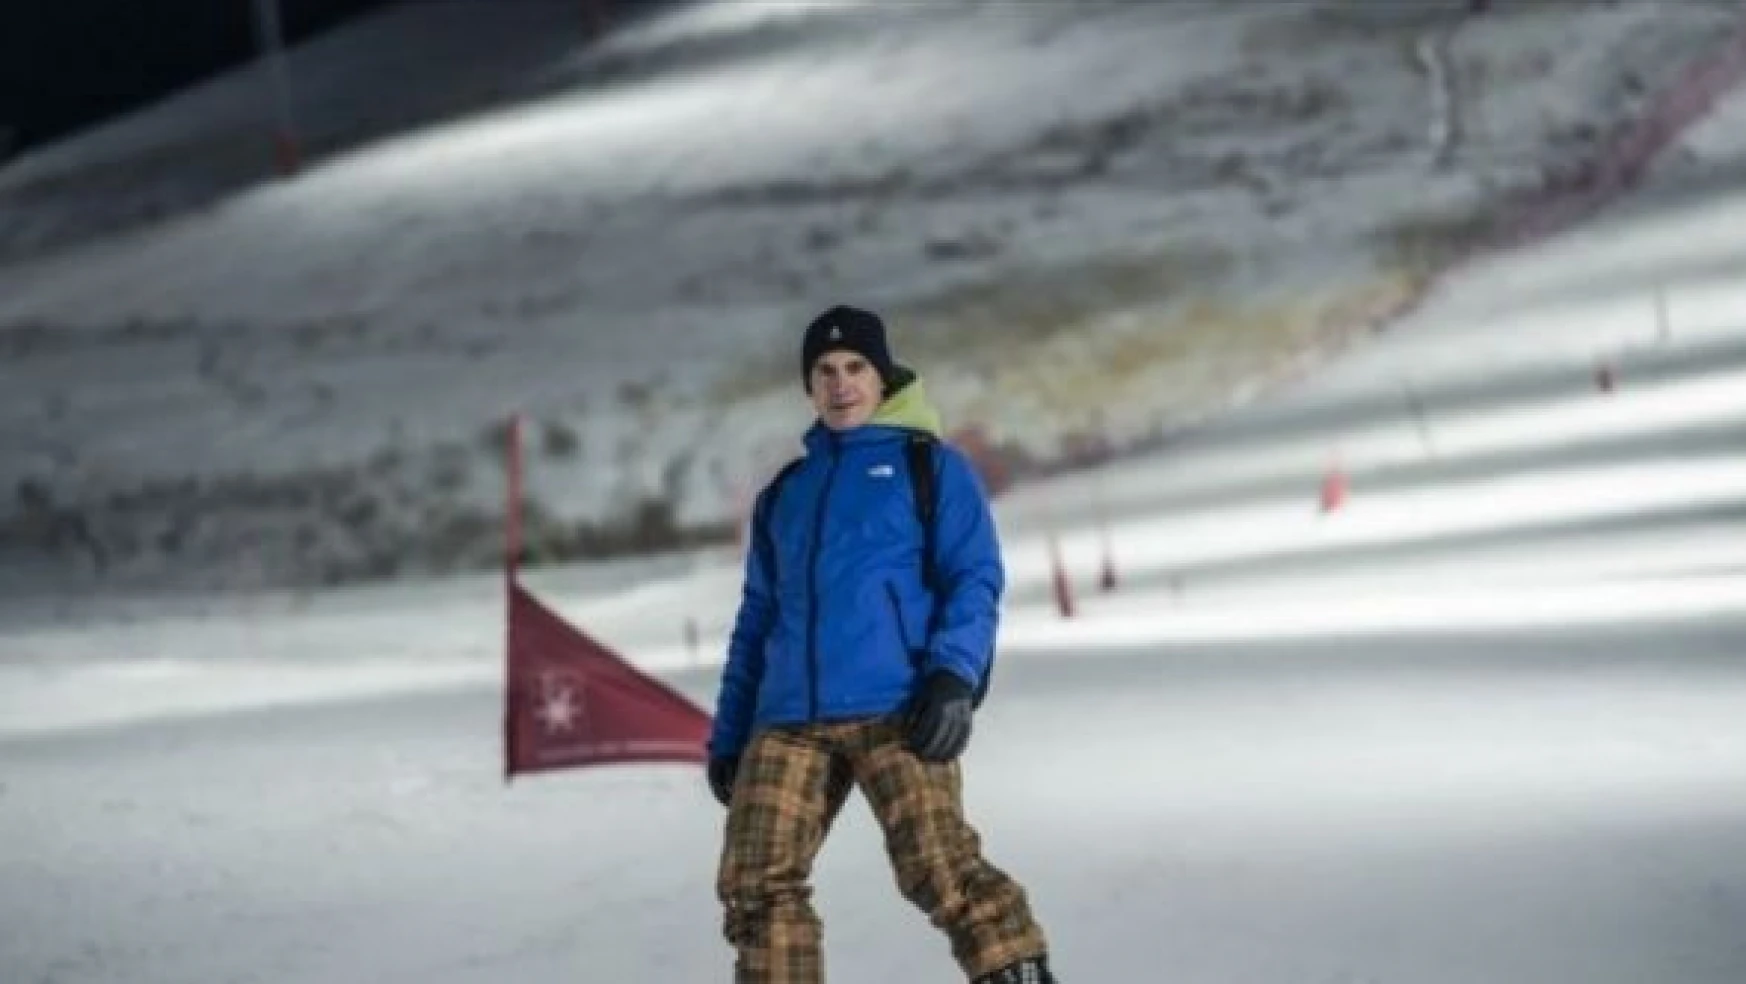 Olimpiyat şampiyonu Galmarini'den Erzurum'da  snowboard eğitimi